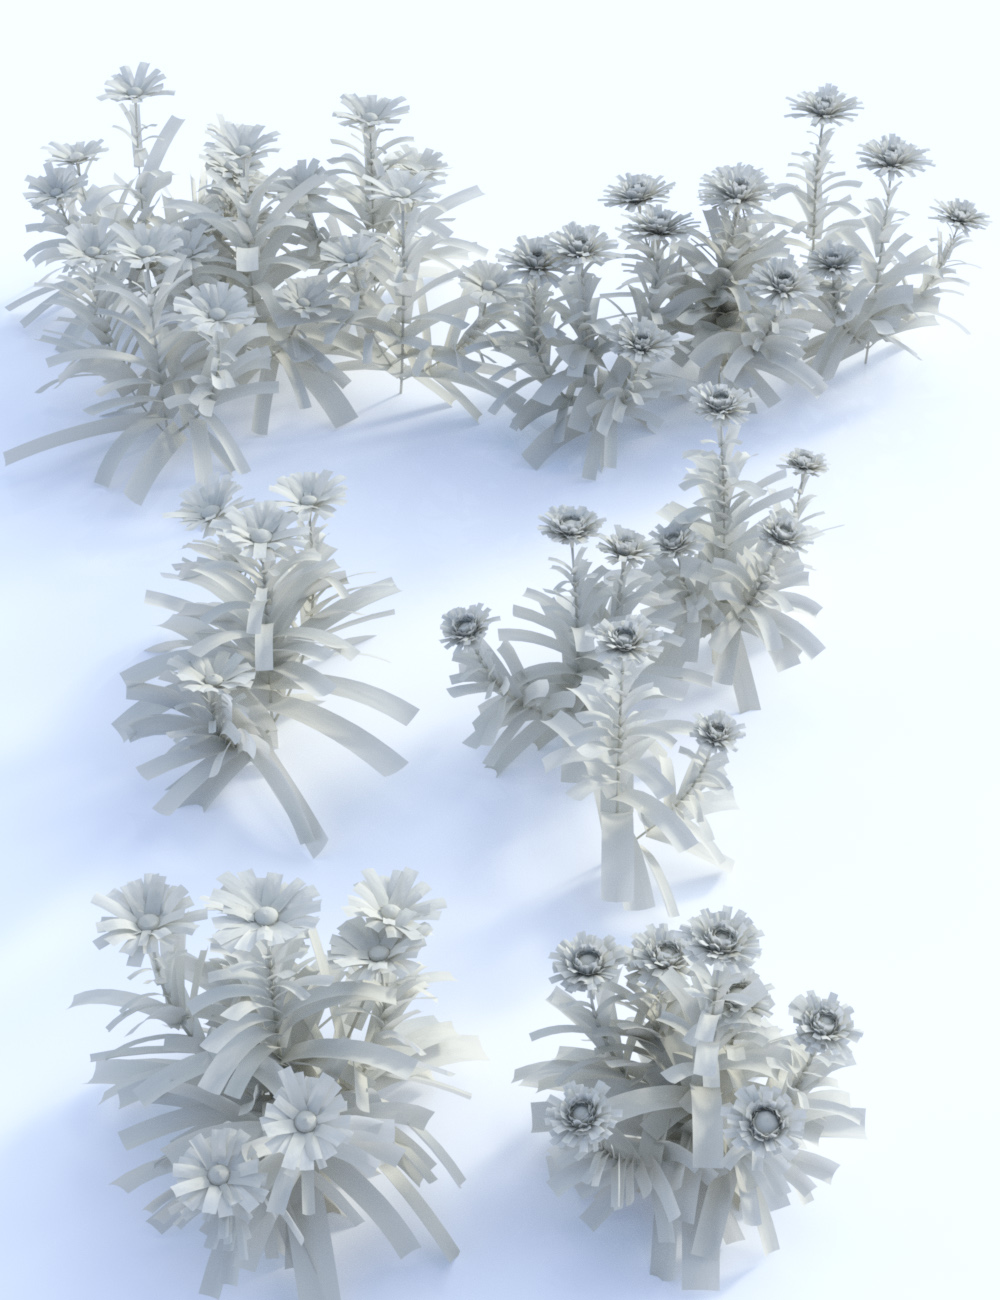 Garden Flowers Vol 1 - Herbs by: MartinJFrost, 3D Models by Daz 3D